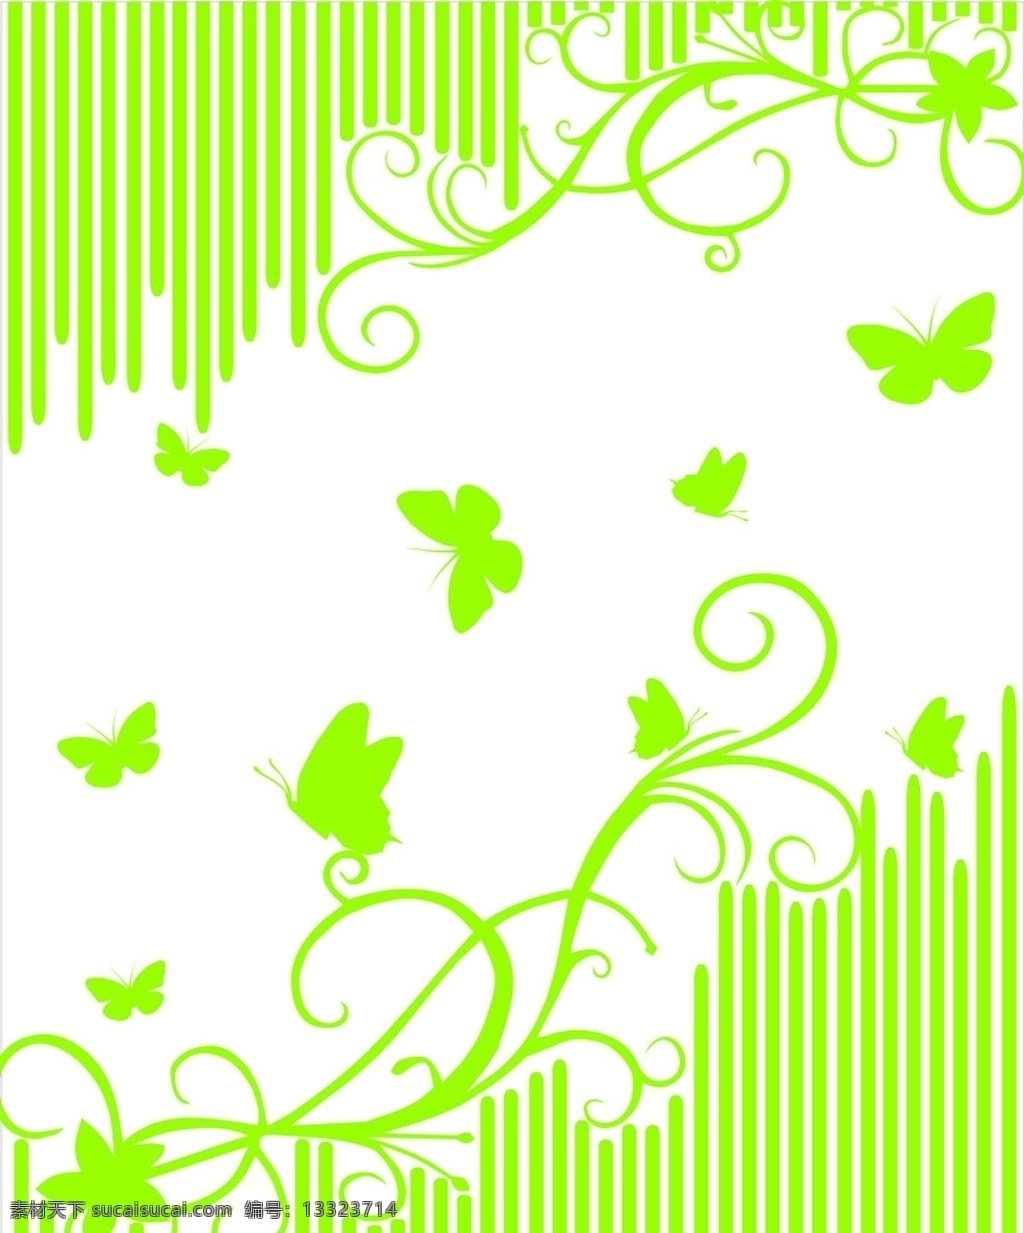 藤蔓 花纹花边 蝴蝶 长条 绿色 矢量素材 底纹边框 矢量